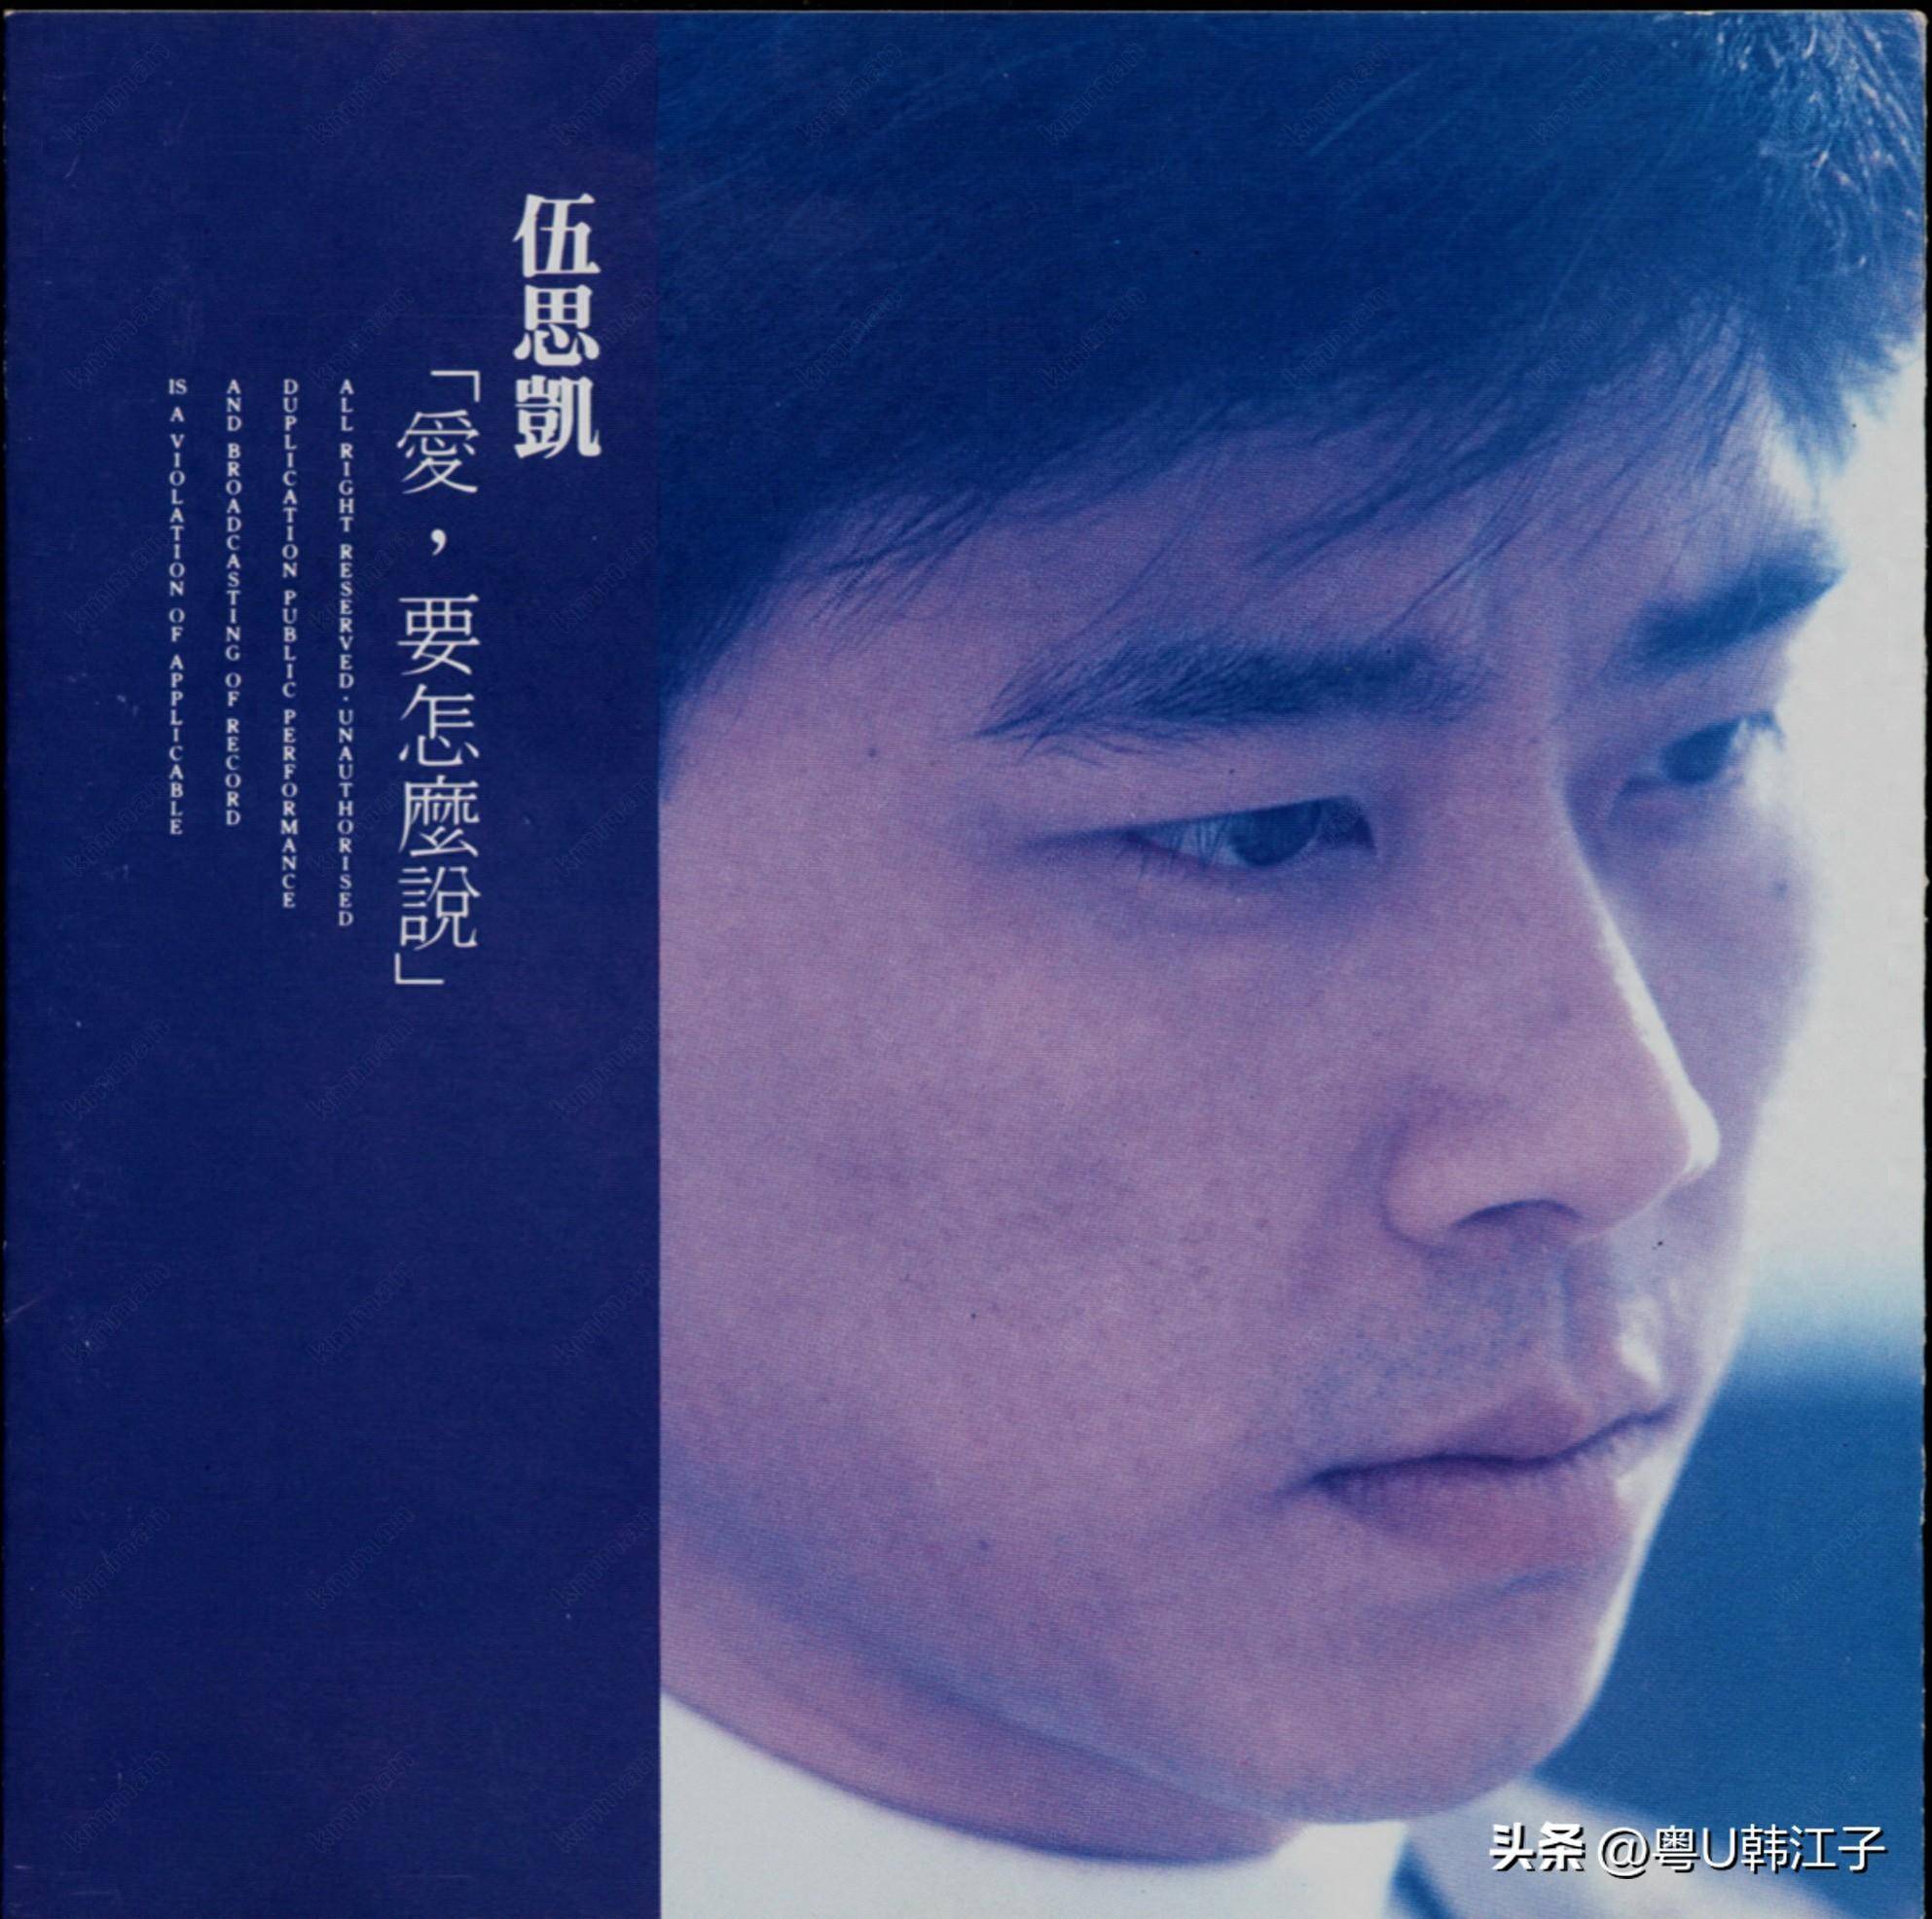 伍思凯《爱 要怎么说》音乐专辑,于1988年制作发行